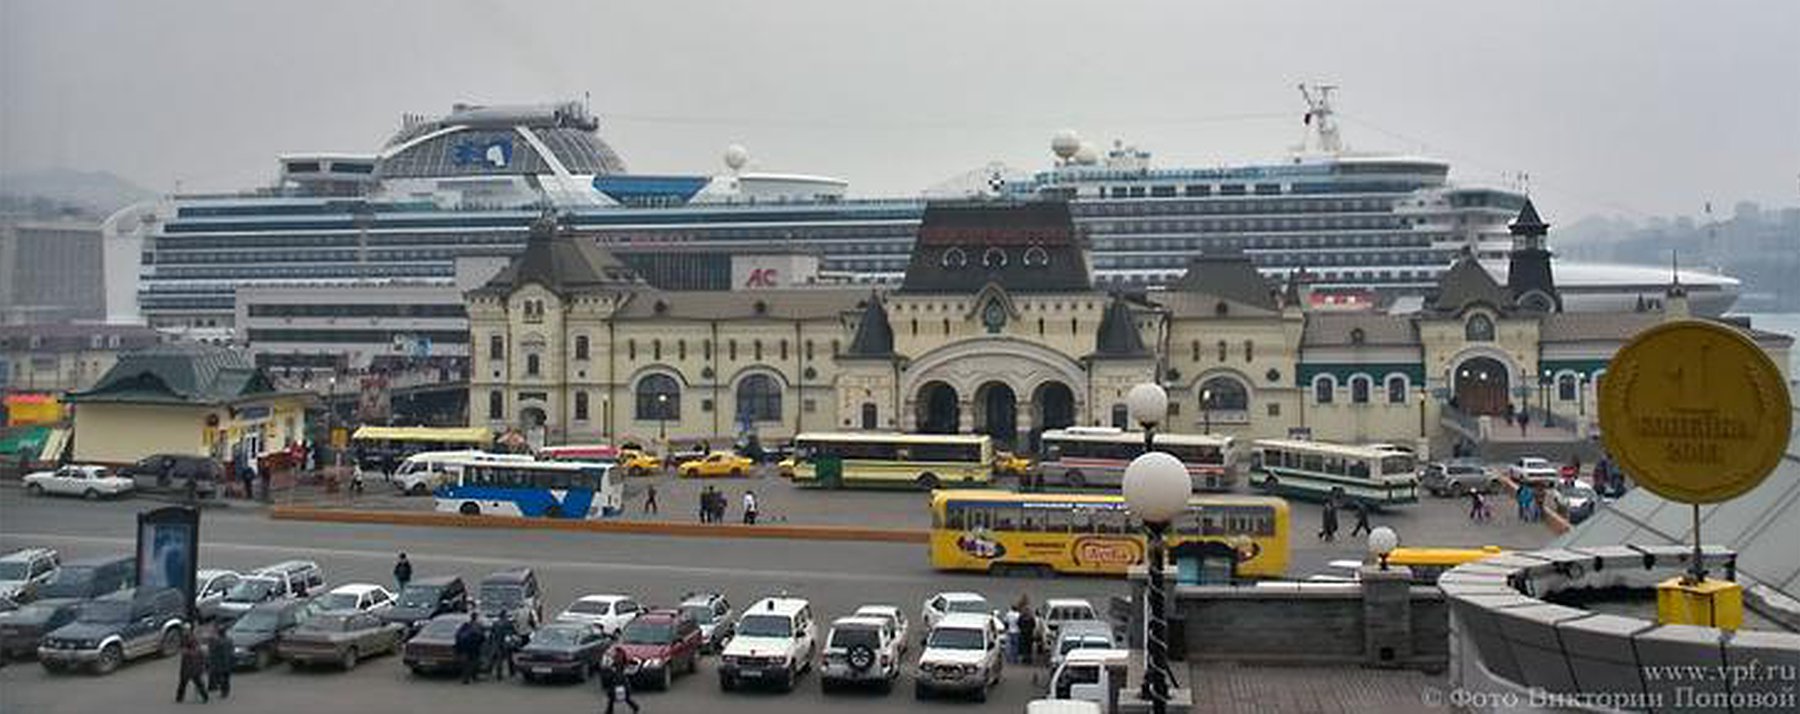 морской вокзал в владивостоке